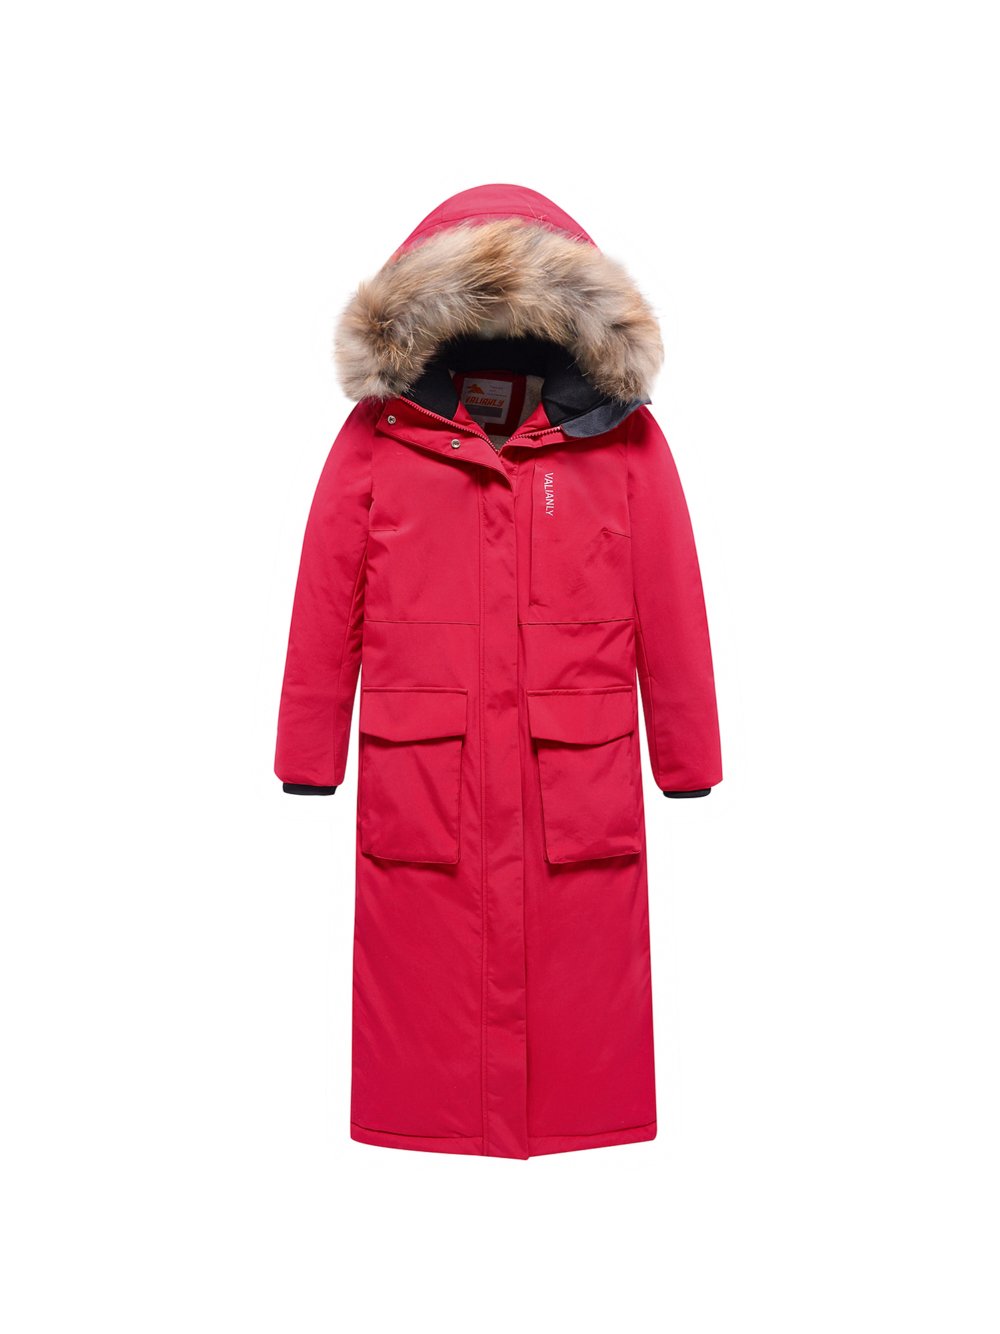 Купить куртку парку для девочки оптом от производителя недорого в Москве 9344Kr 1